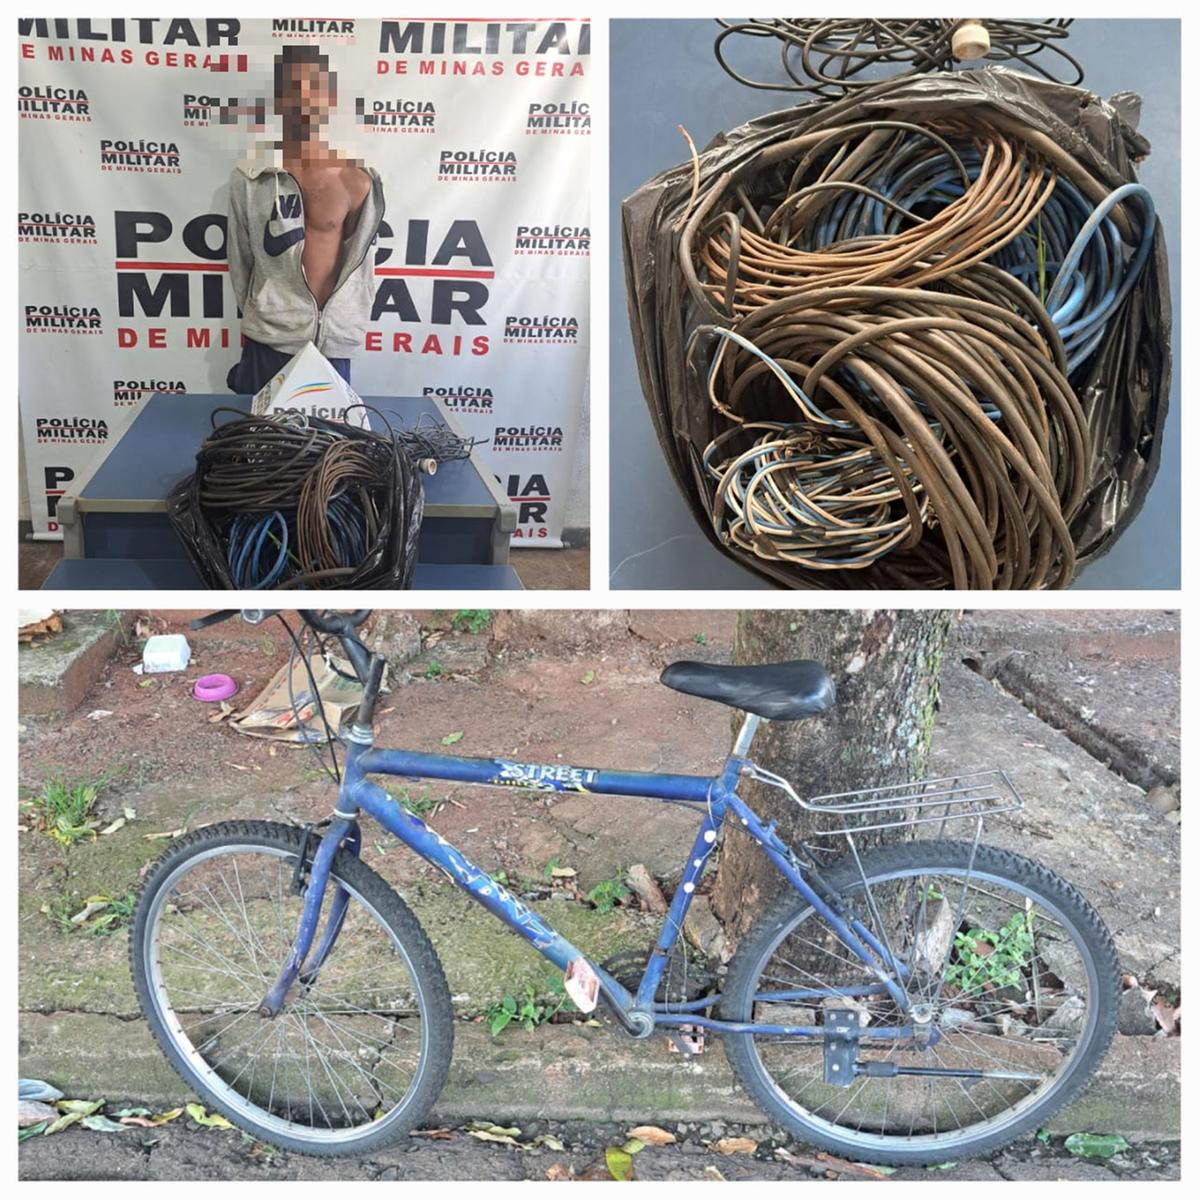 Foi encontrado um saco plástico contendo fios de cobre, que haviam sido recentemente furtados de uma residência. Além disso, a bicicleta utilizada pelo suspeito também foi apreendida (Foto/Divulgação PM)